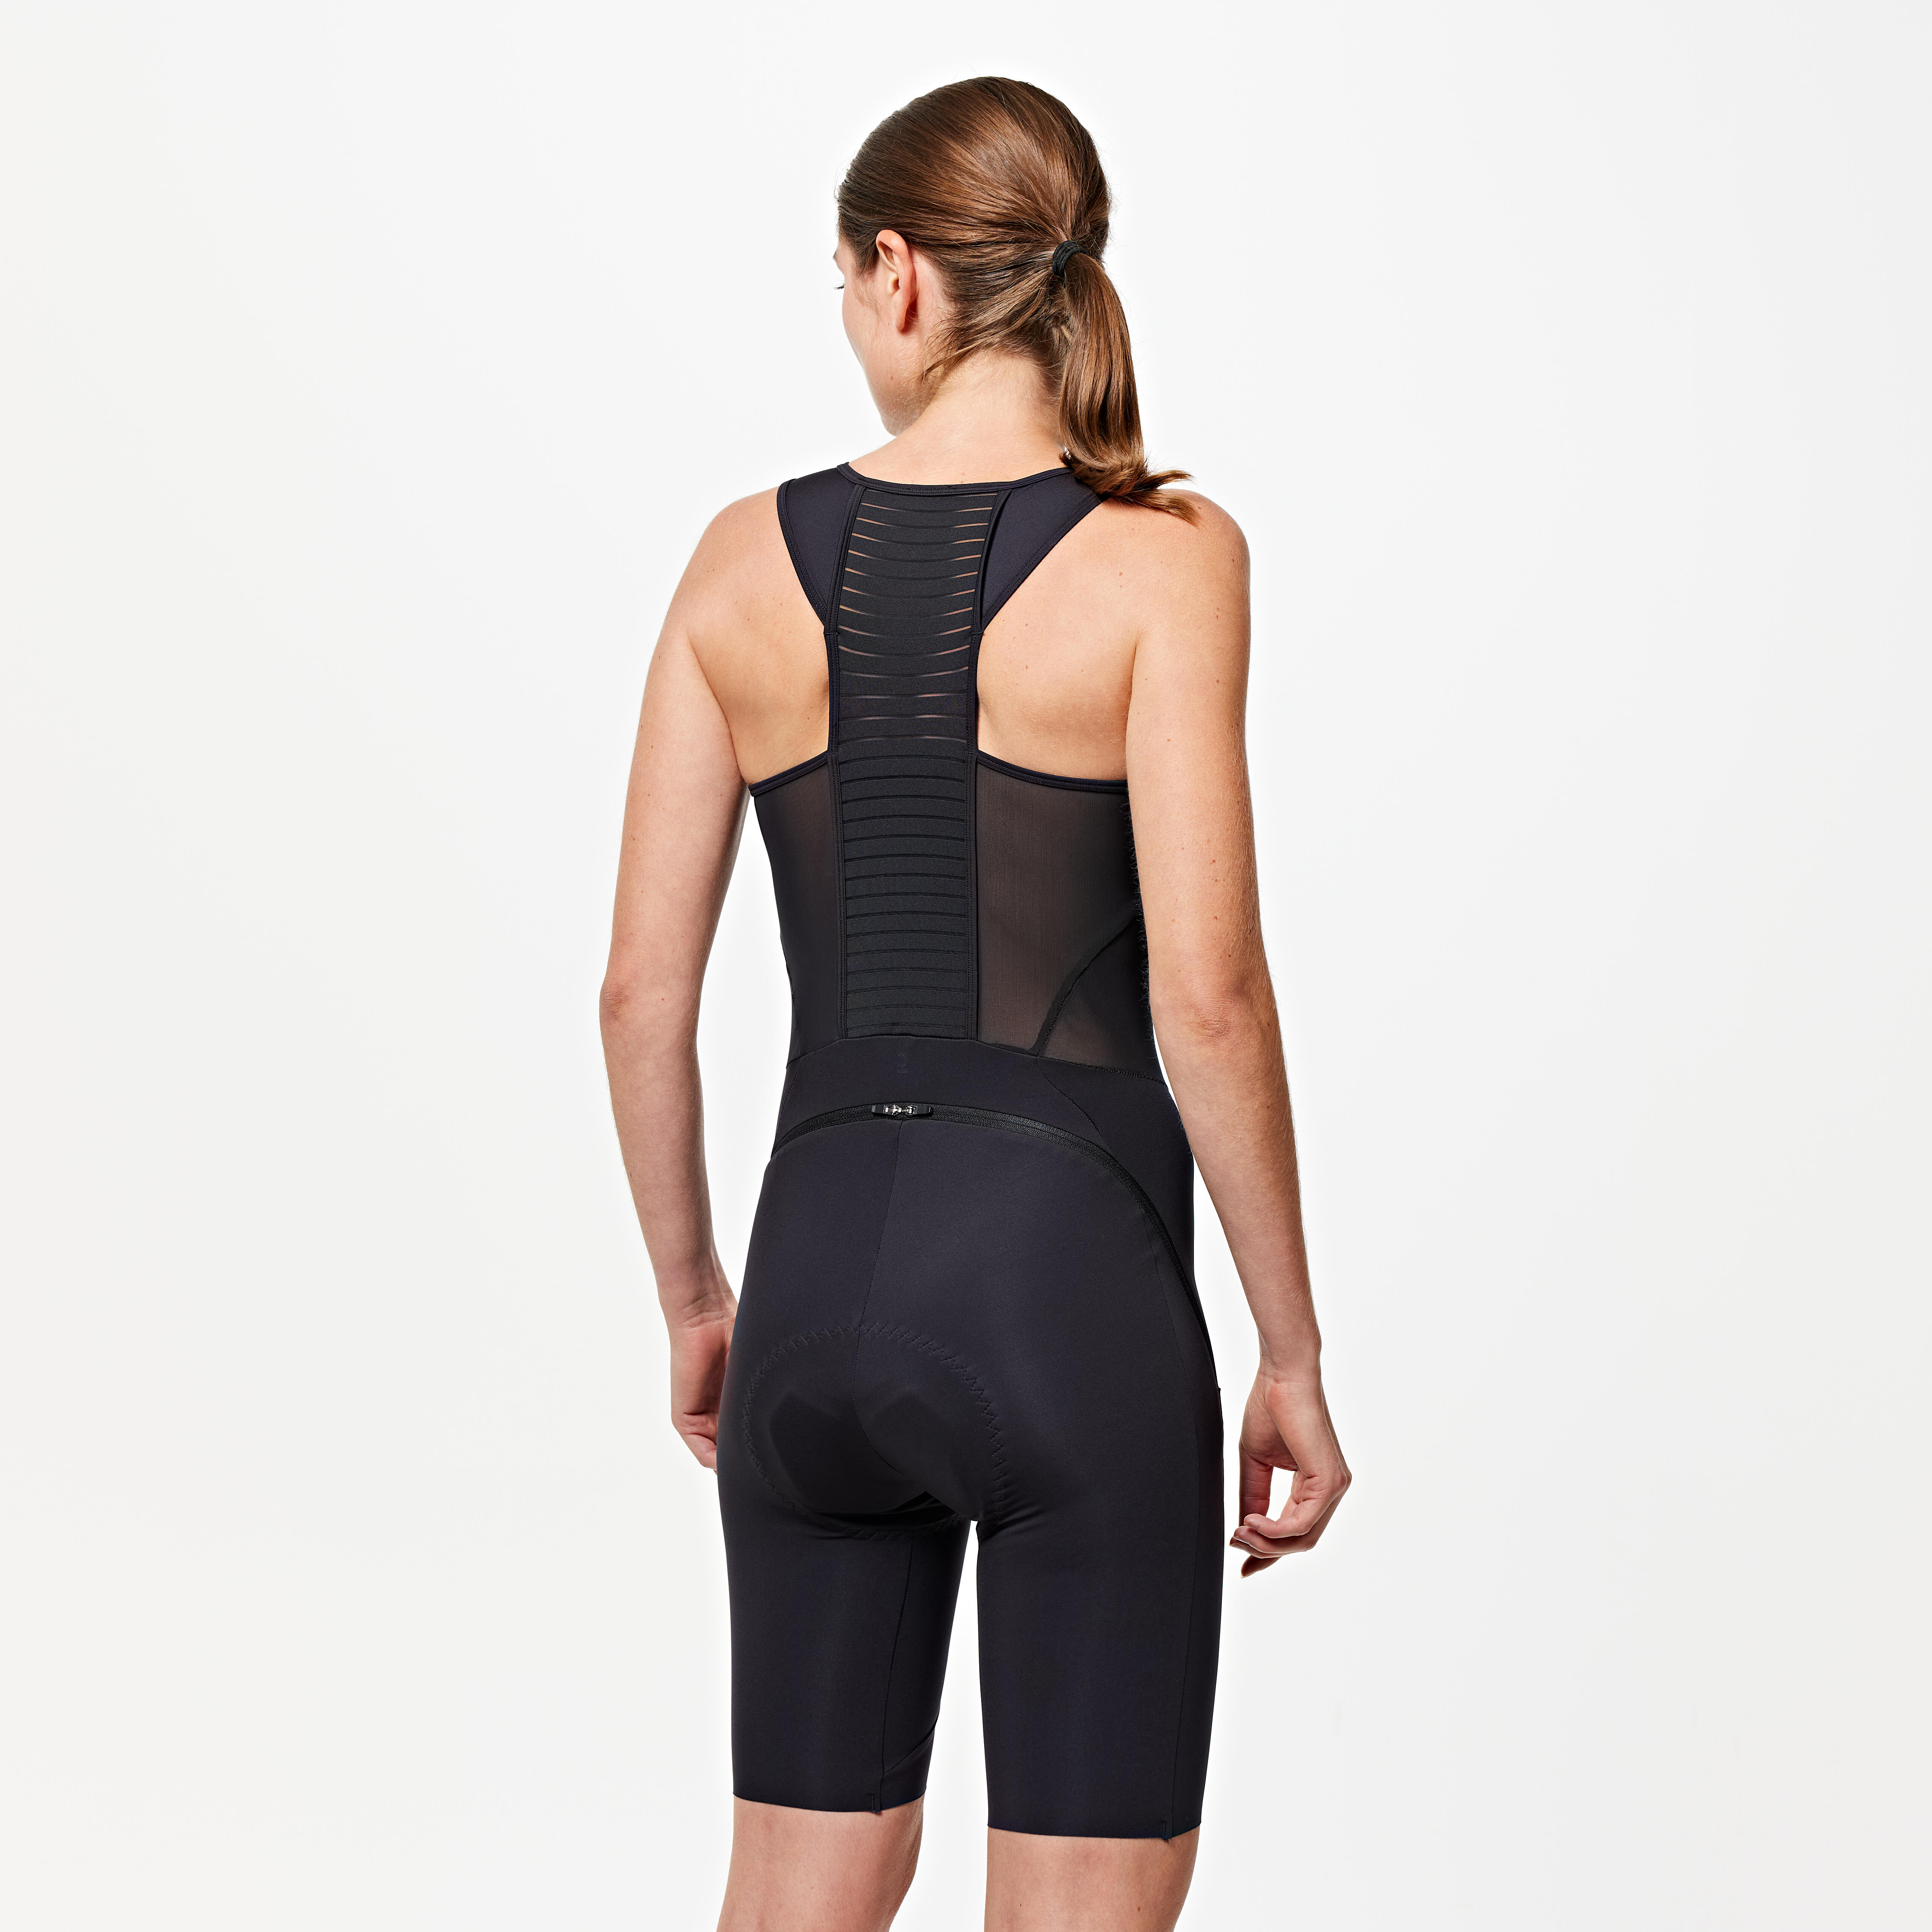 Women's Biking Bib Shorts - Black - VAN RYSEL